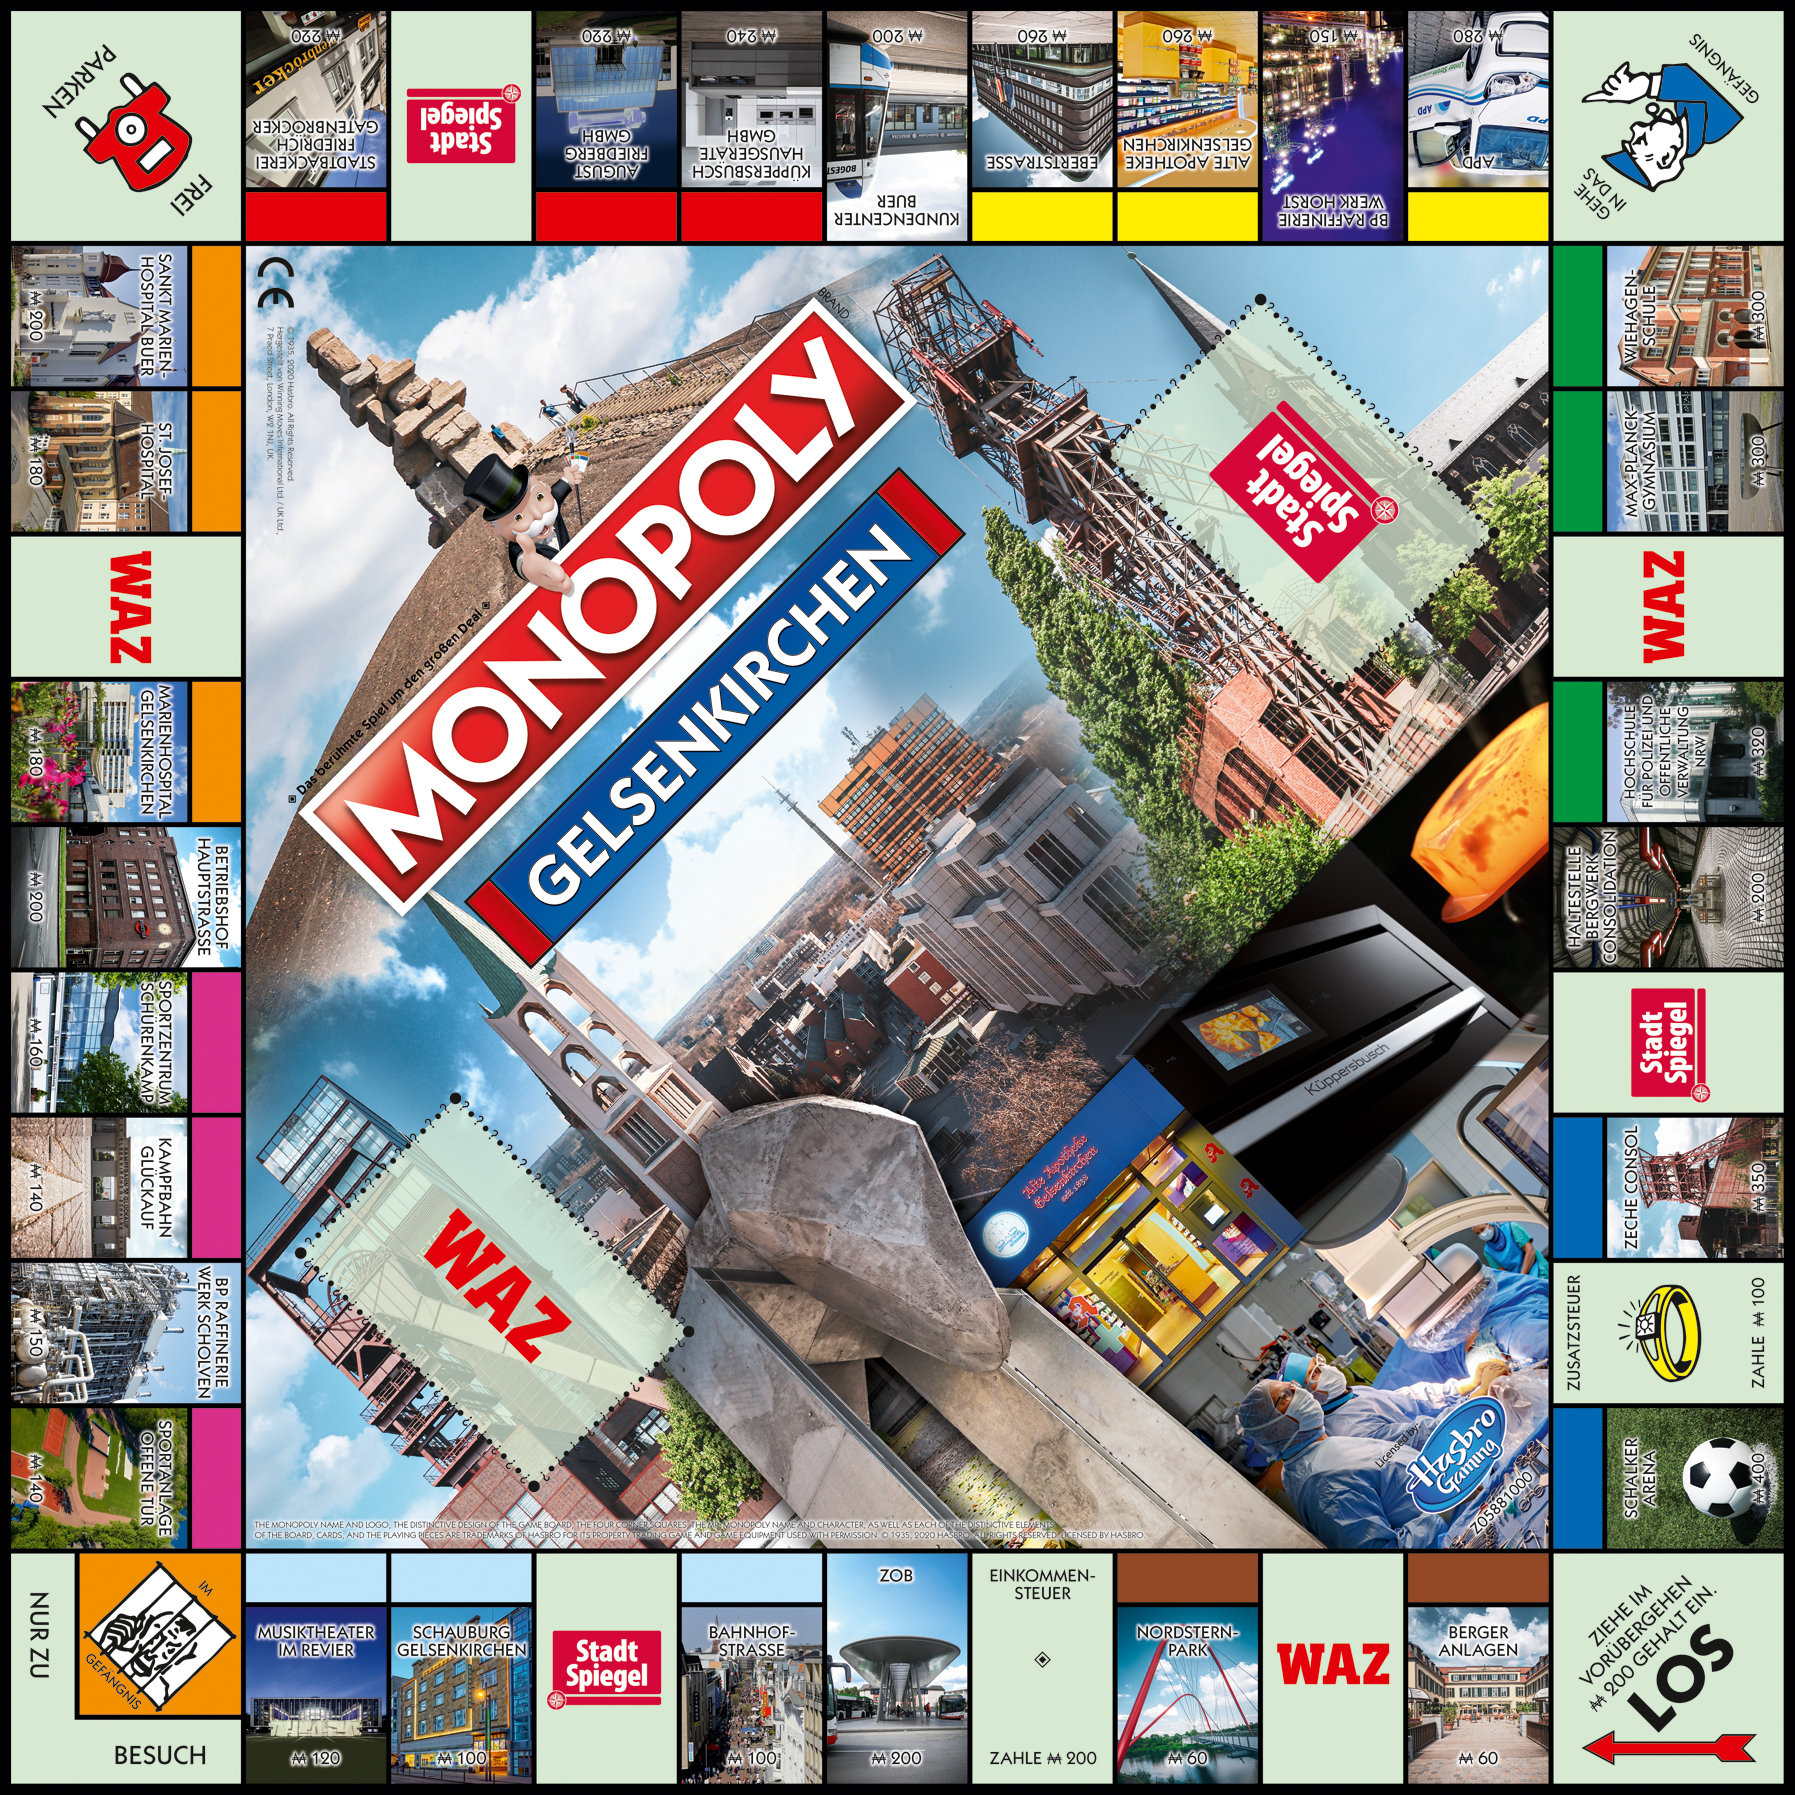 WINNING MOVES Monopoly Brettspiel Gelsenkirchen